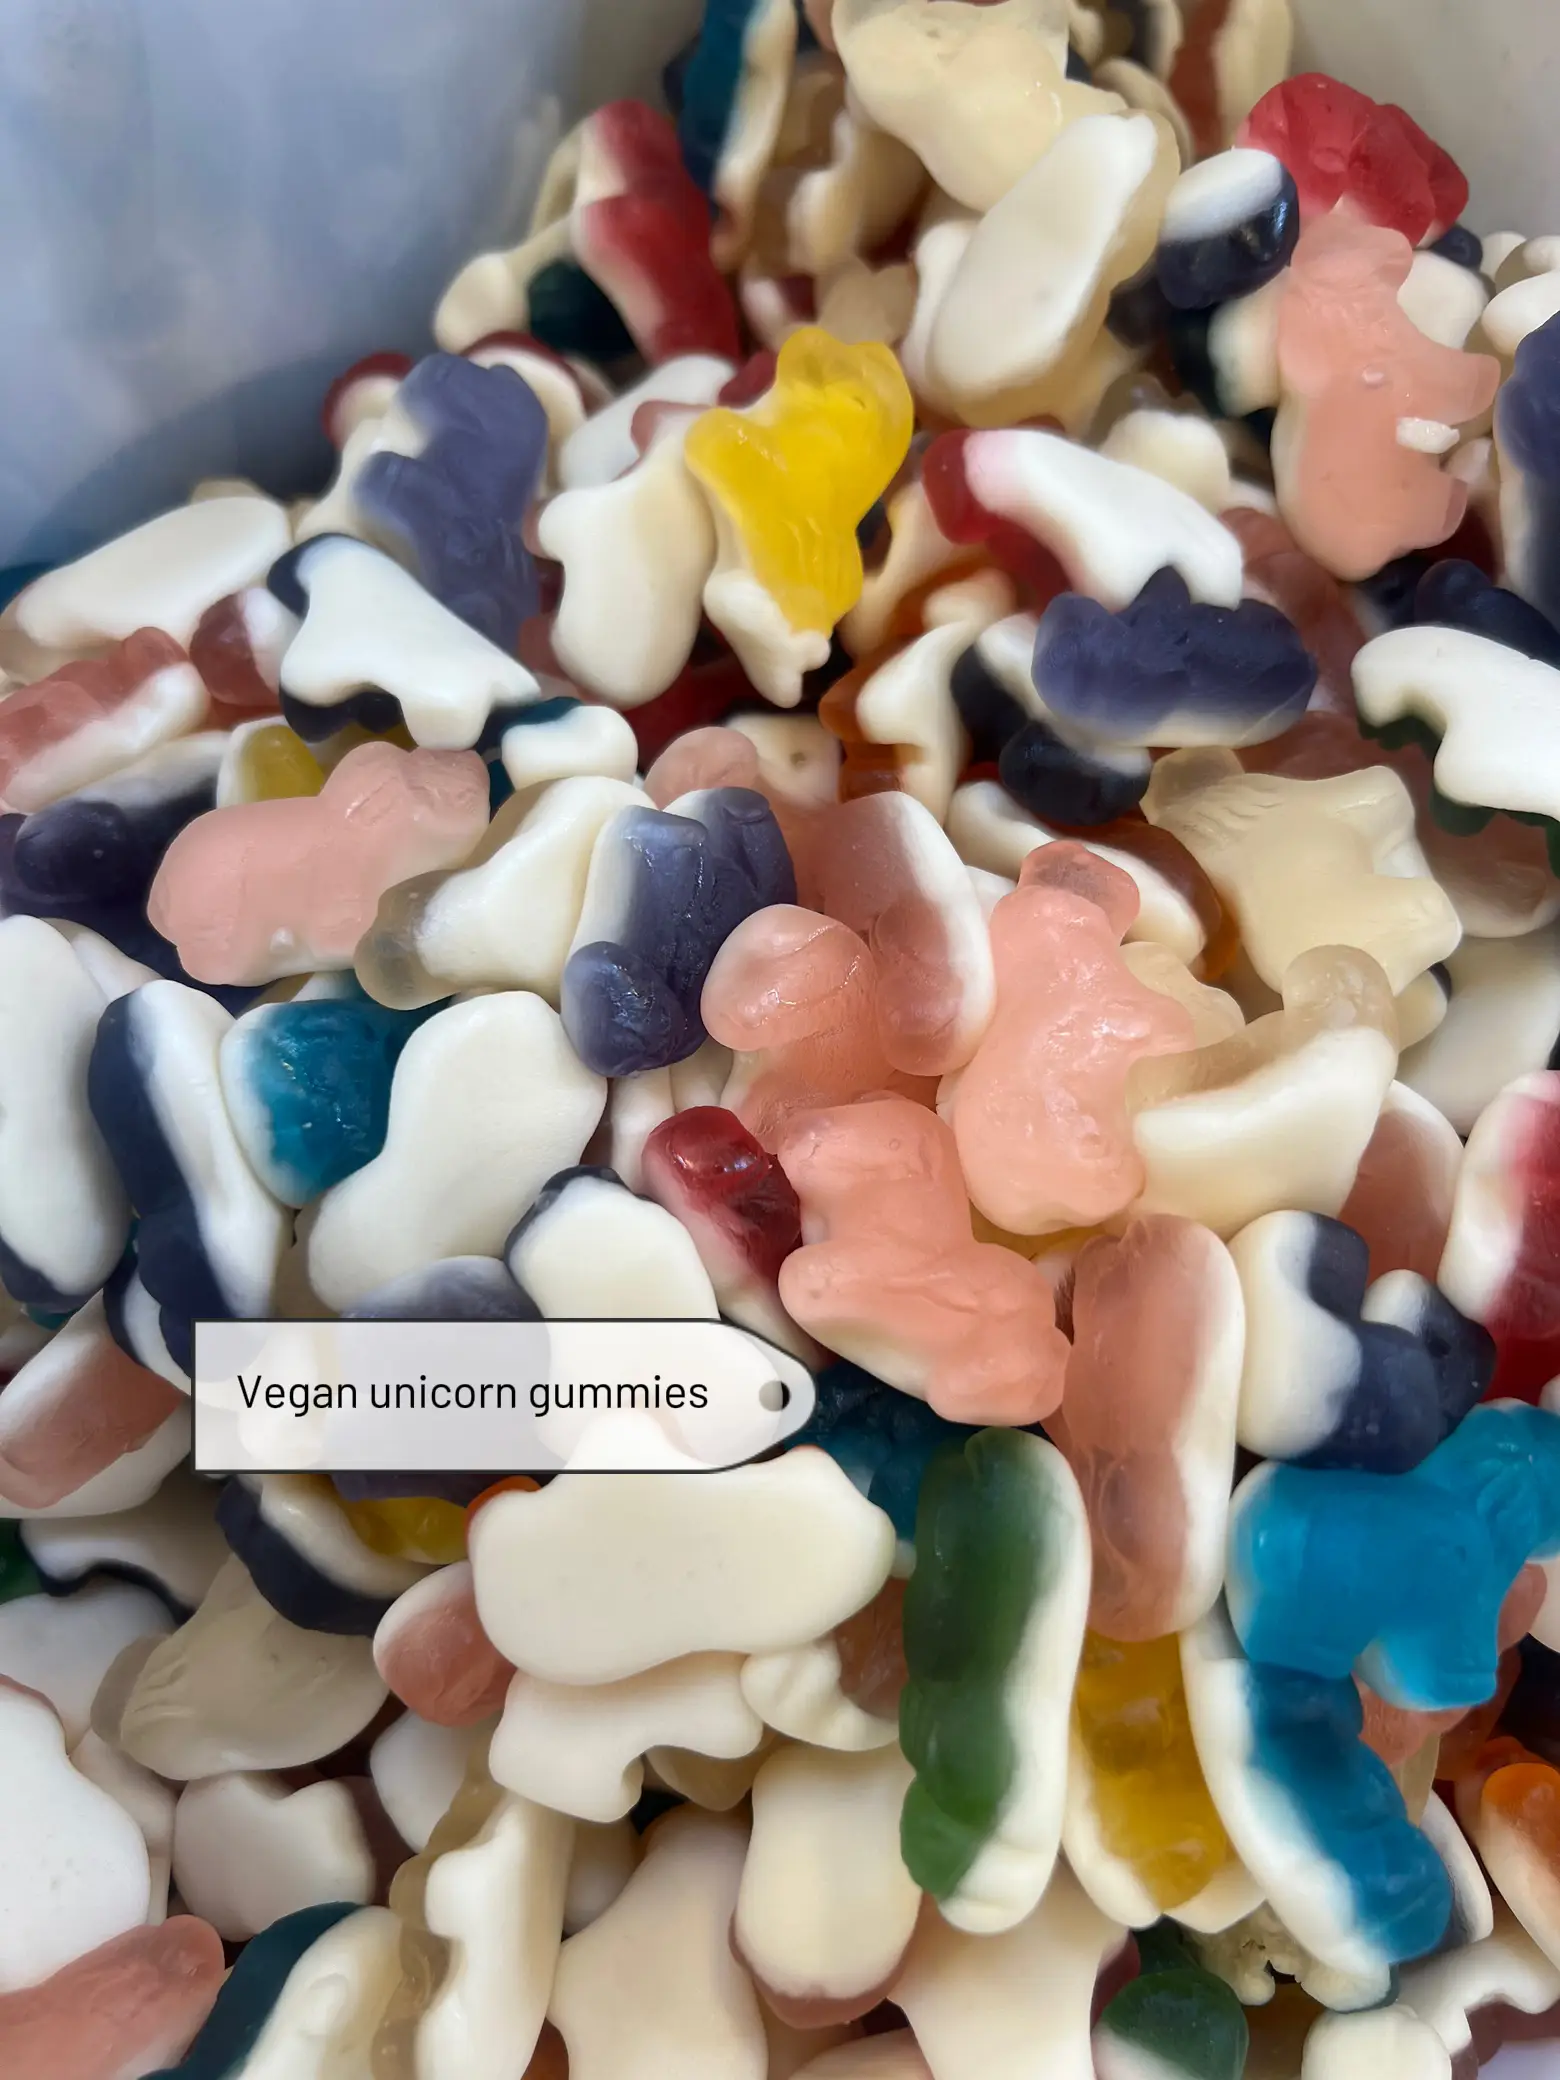 Candy-Gummy Bears – Gilbert Pecan